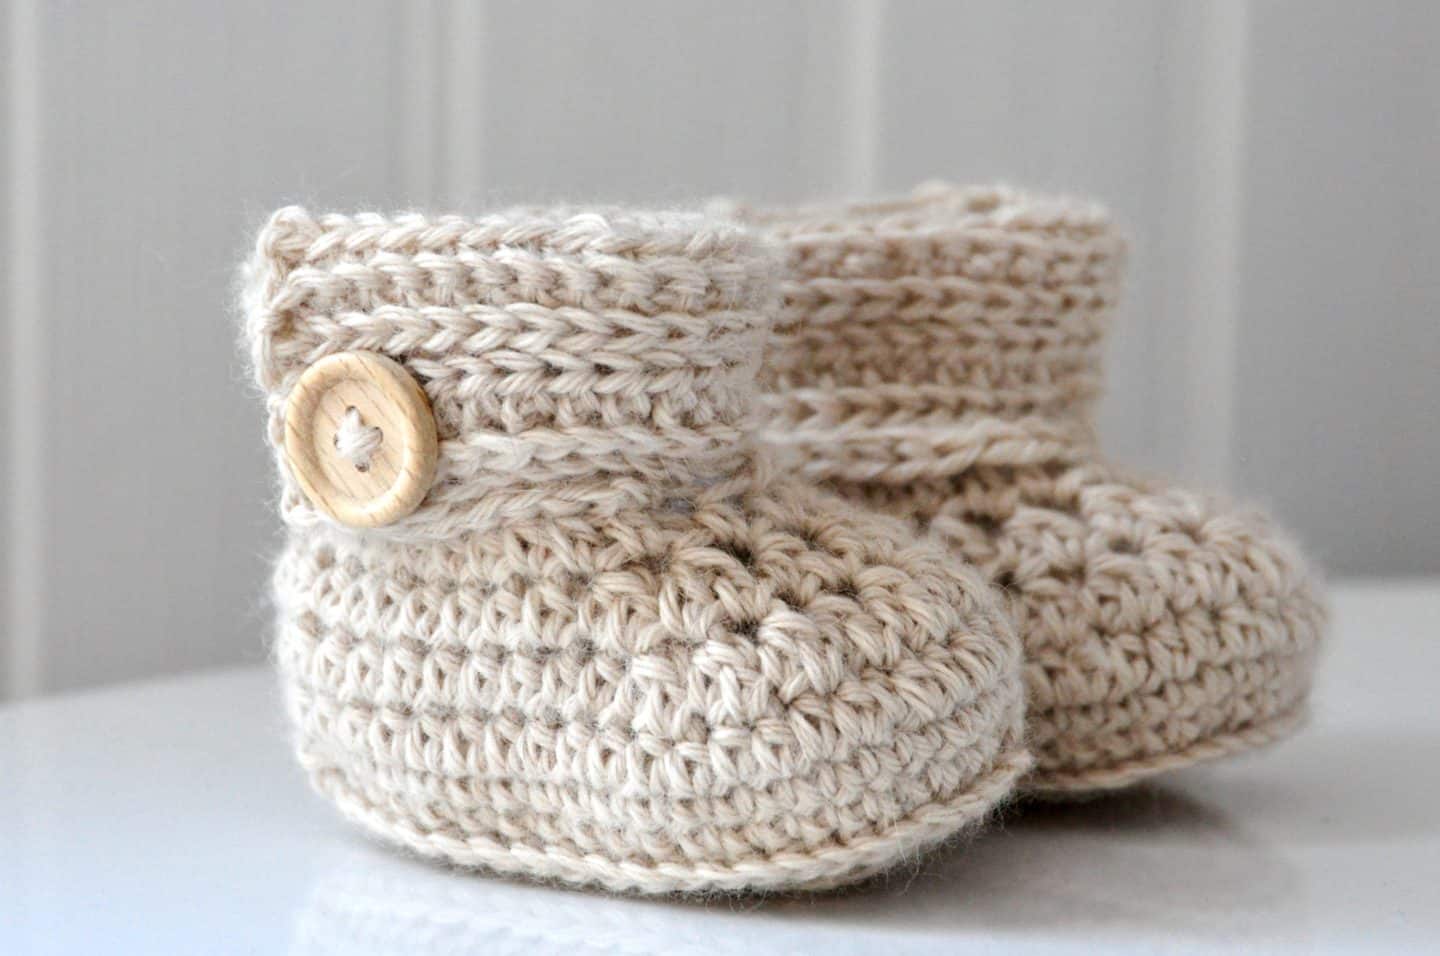 crochet wrap around booties